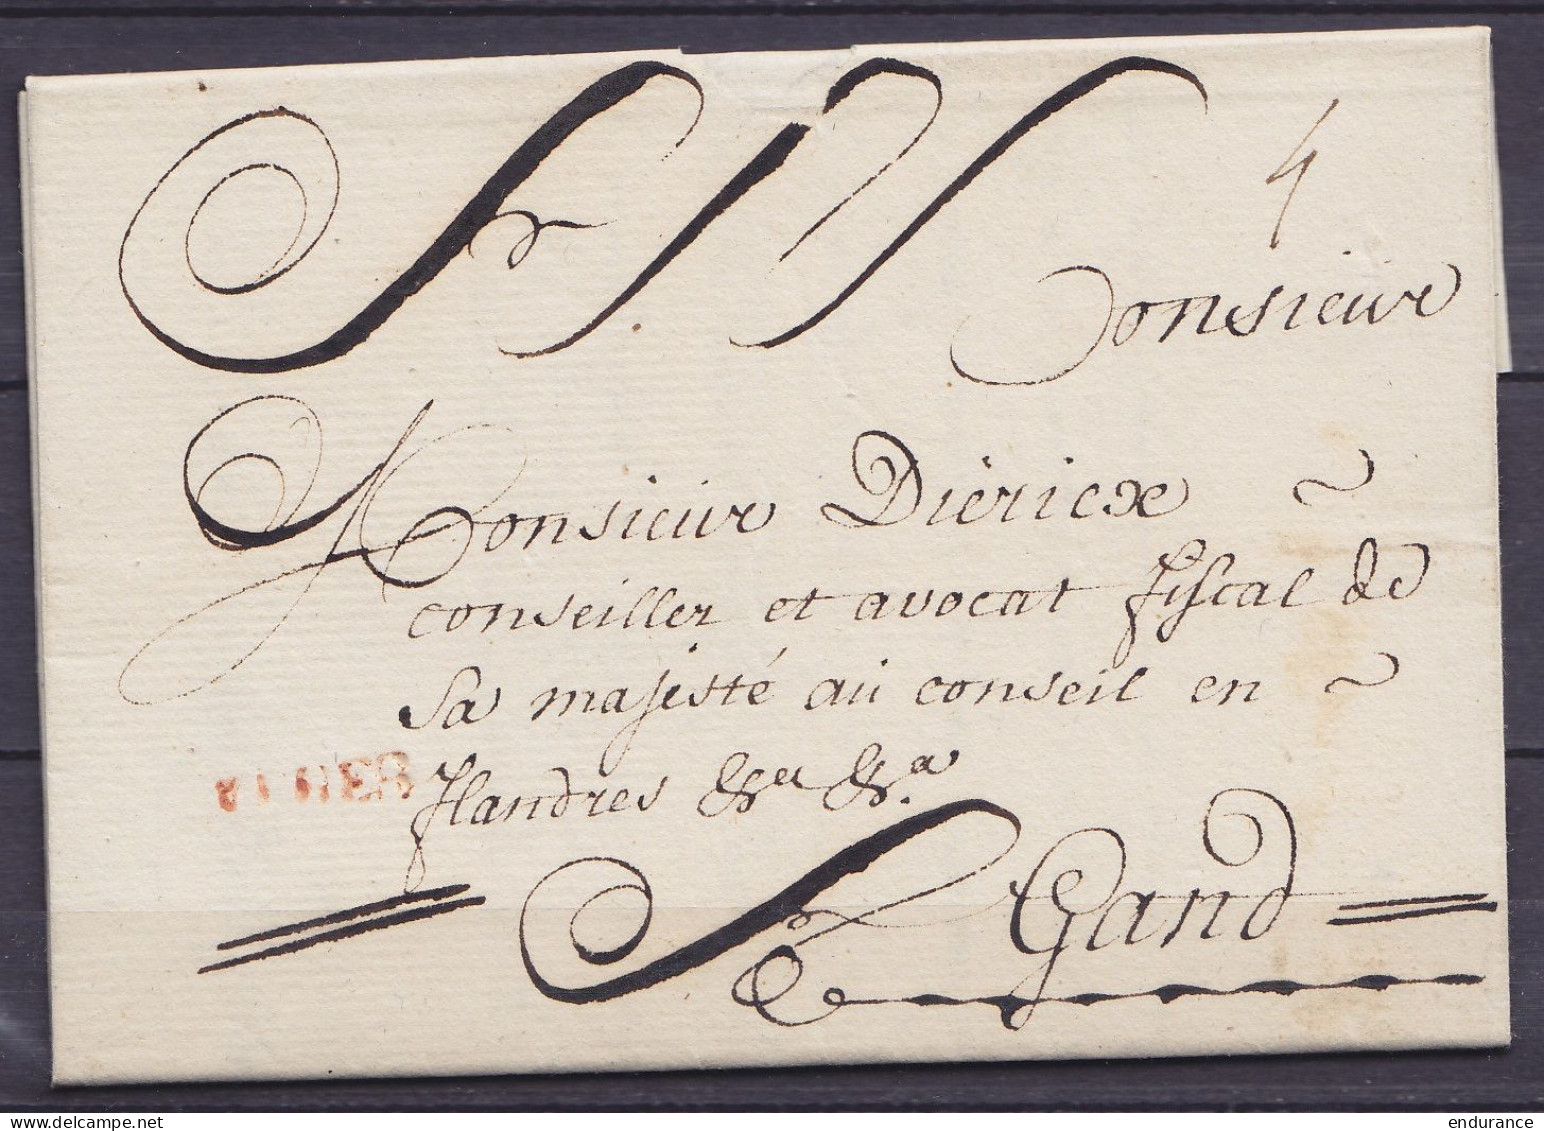 L. Datée 7 Mai 1770 De YPRES Pour GAND - Griffe "IEPER" - Port "3" - 1714-1794 (Austrian Netherlands)